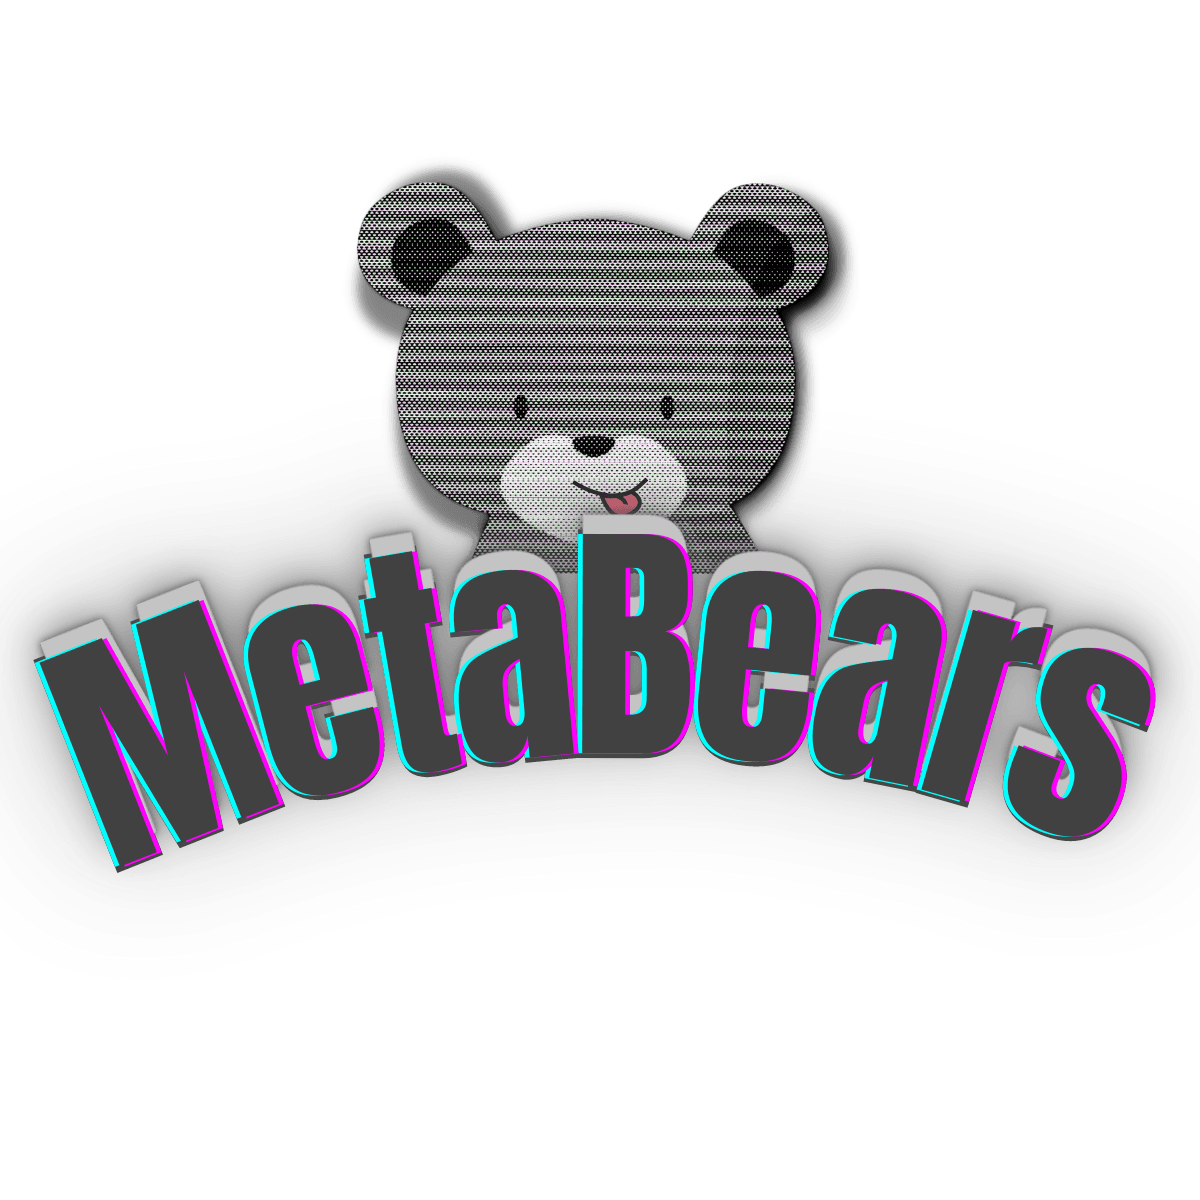 Meta_Bears